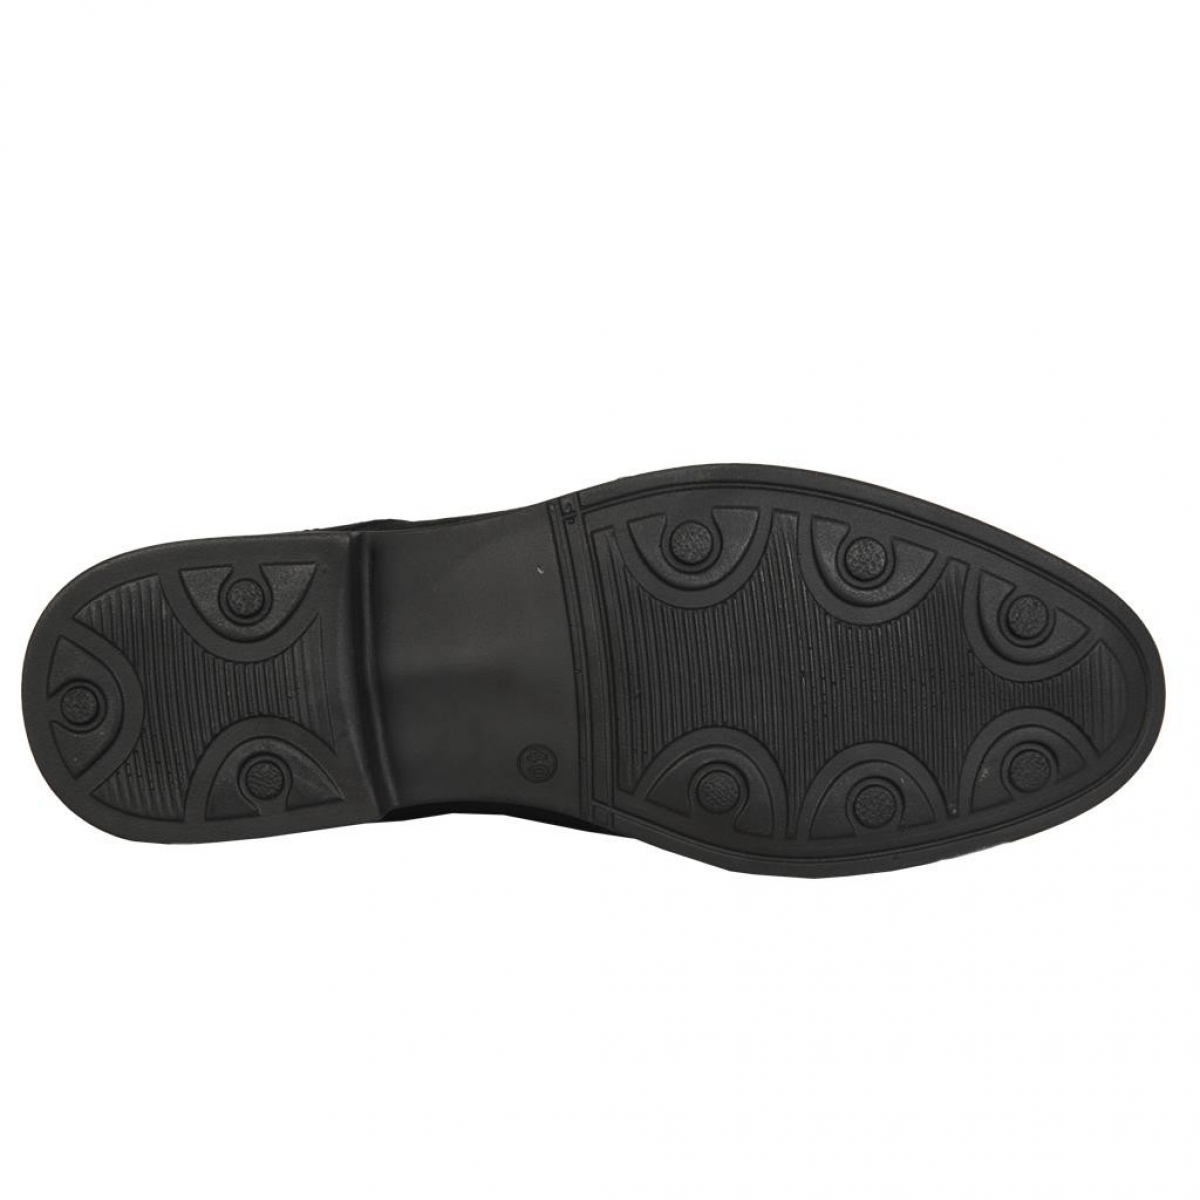 Flo 9551 Siyah %100 Deri Günlük Erkek Klasik Ayakkabı. 4